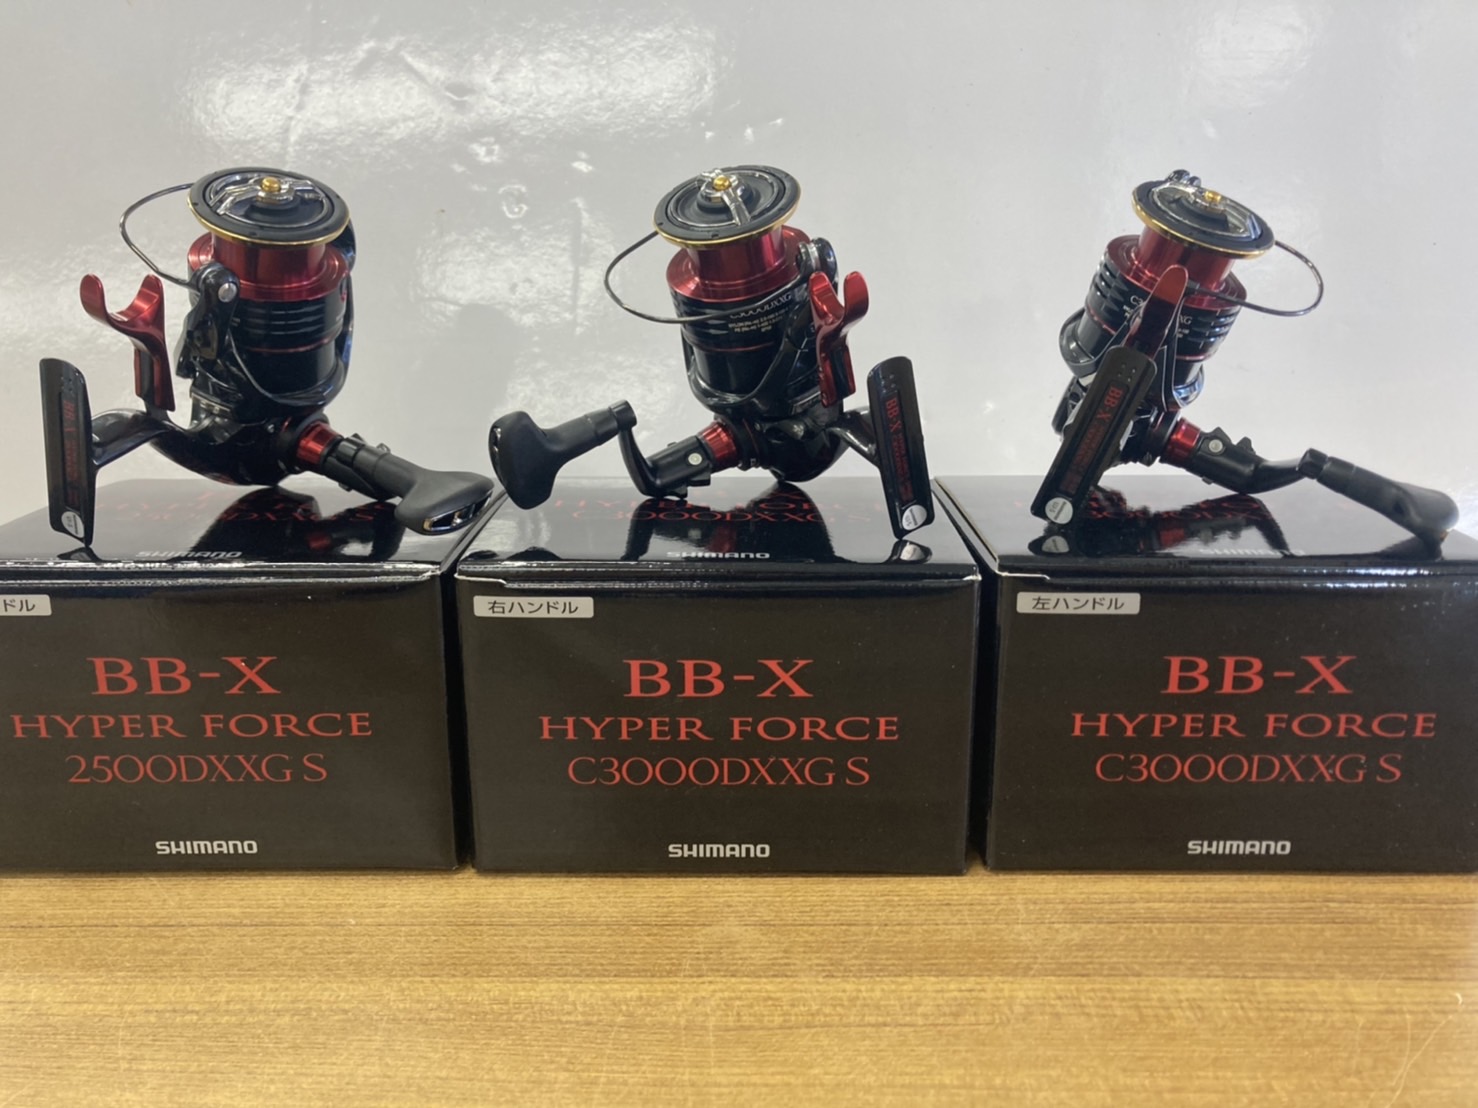 シマノ新製品「BB-X ハイパーフォース」